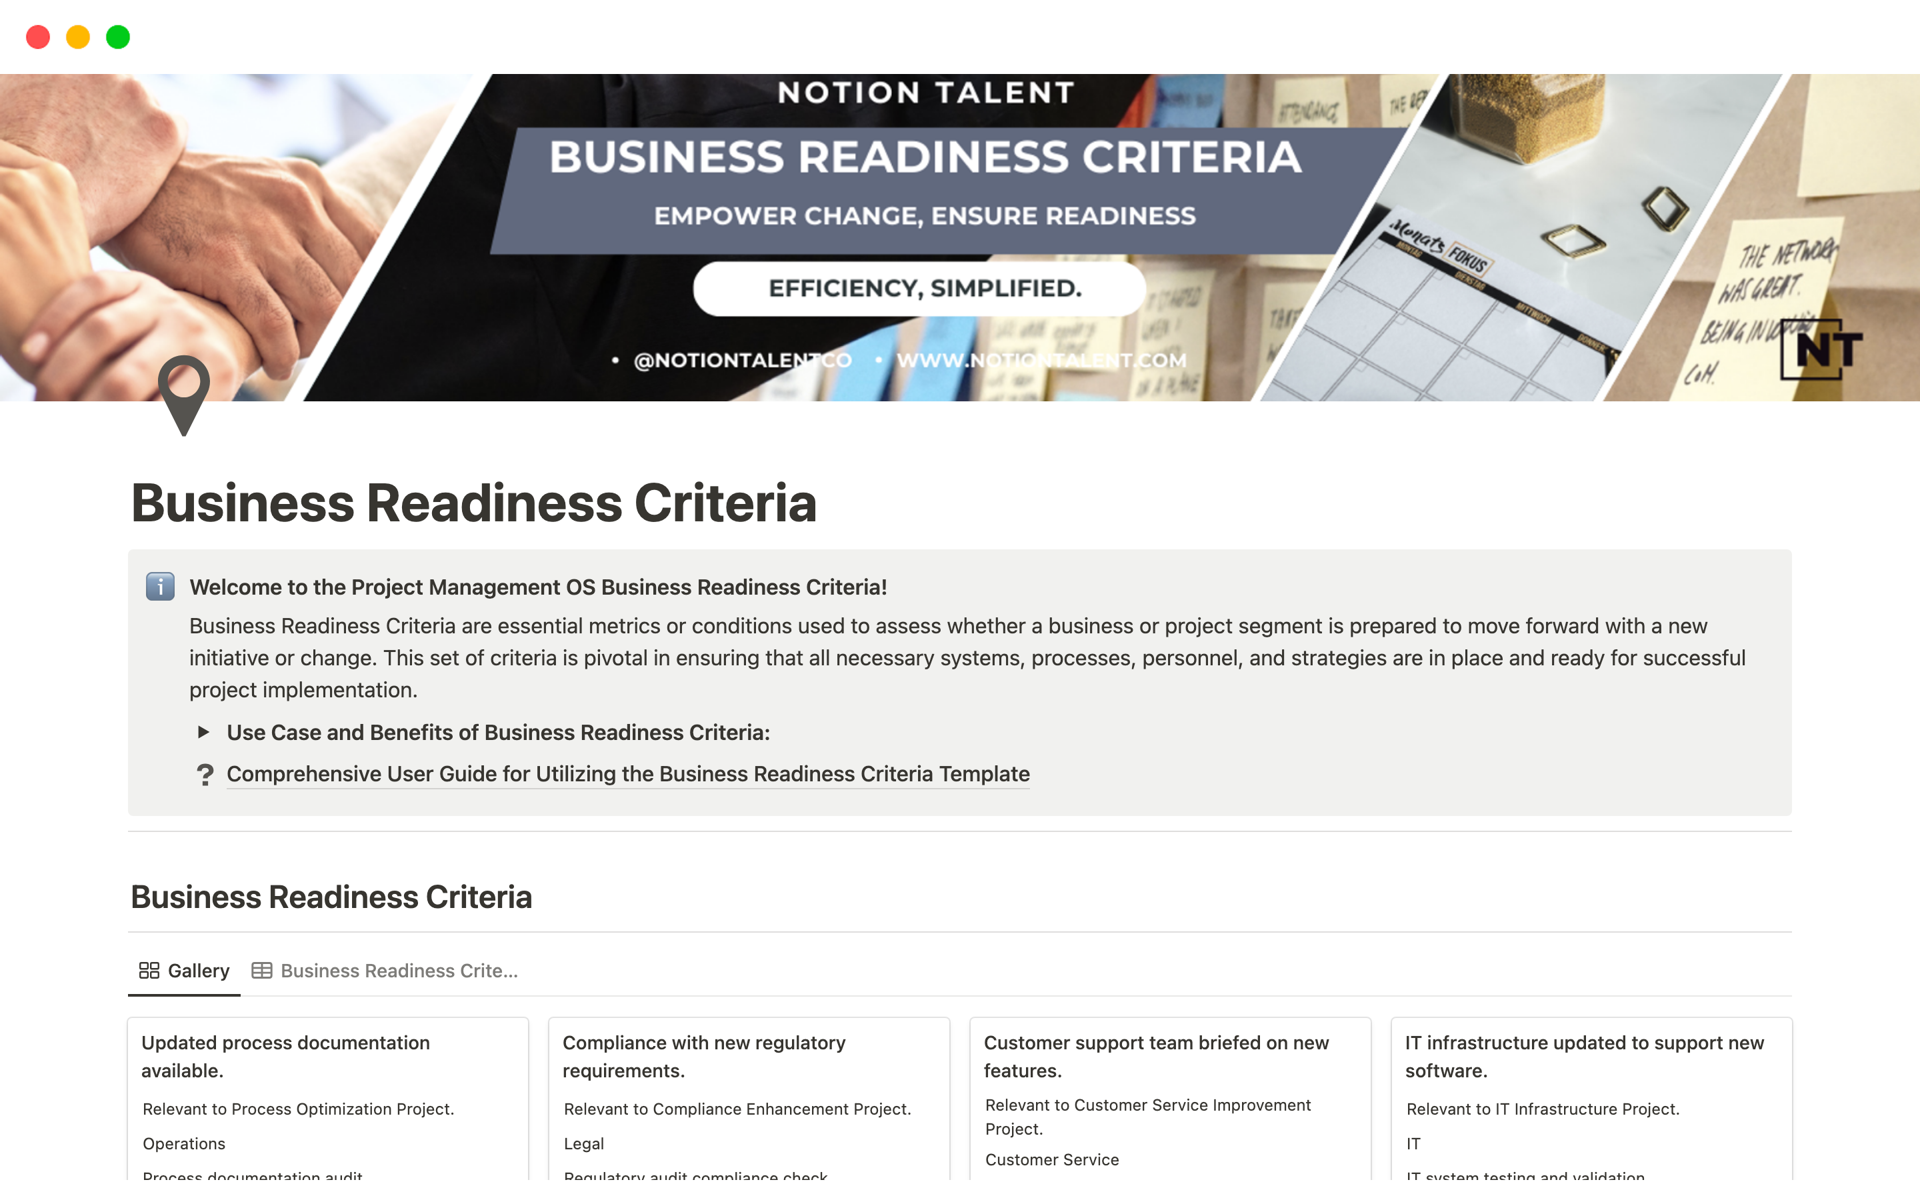 Aperçu du modèle de Business Readiness Criteria